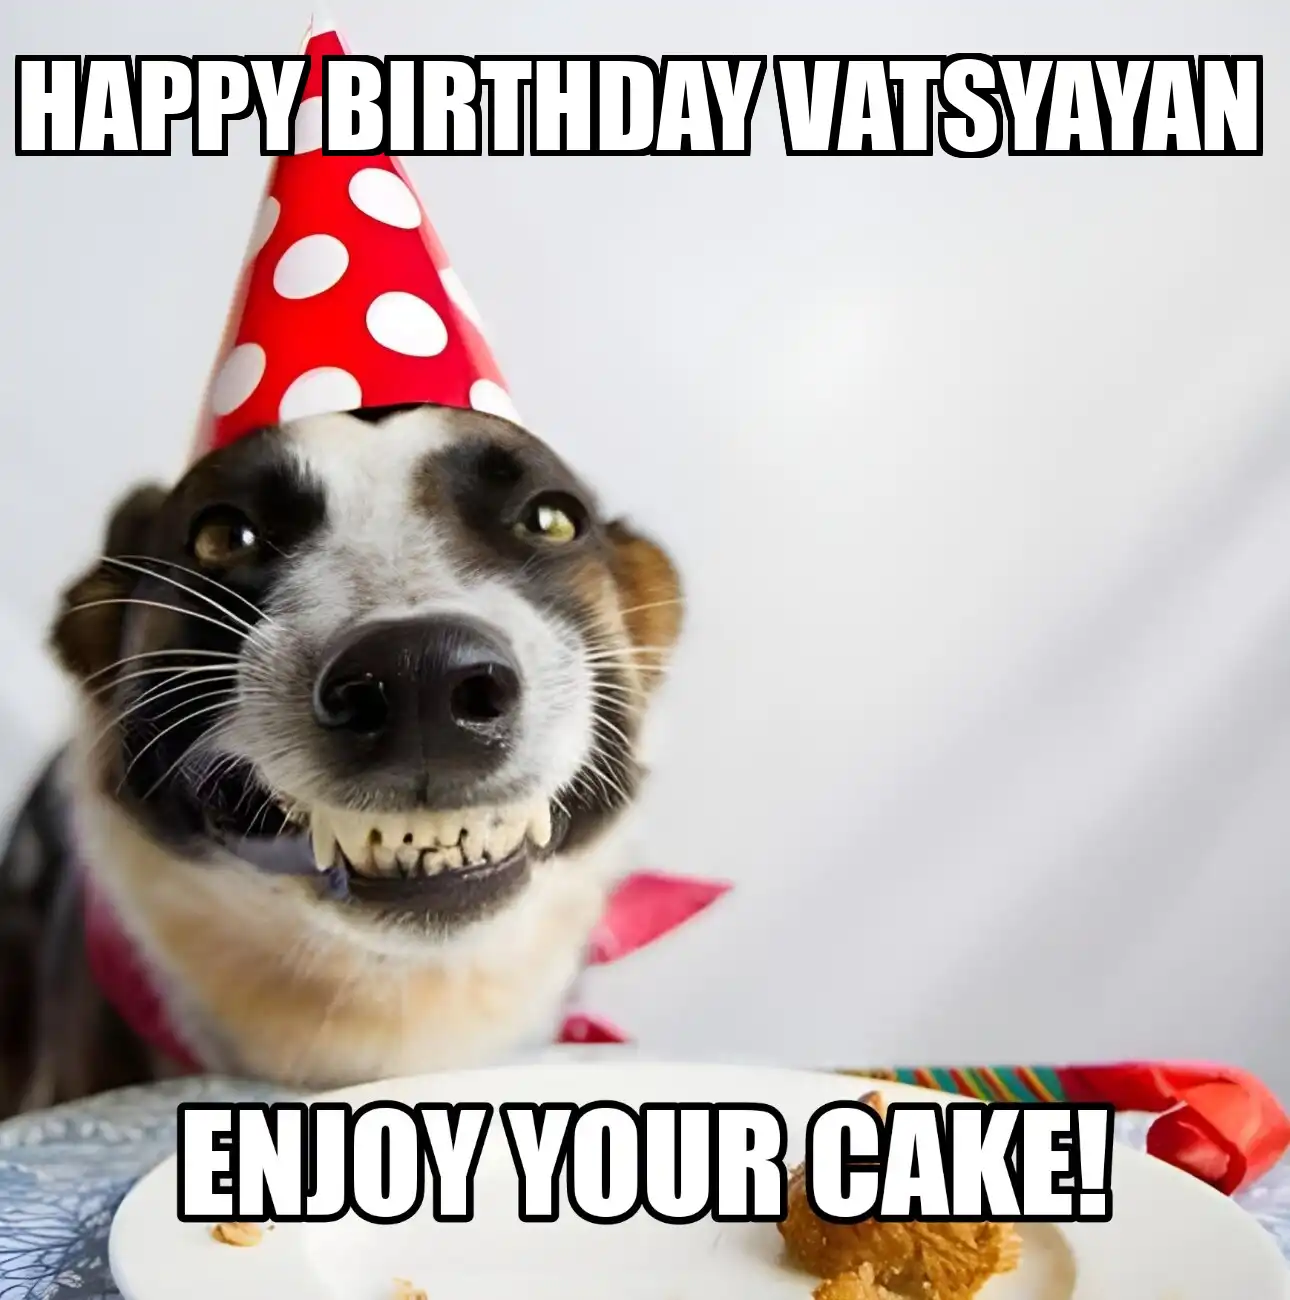 Happy Birthday Vatsyayan Enjoy Your Cake Dog Meme